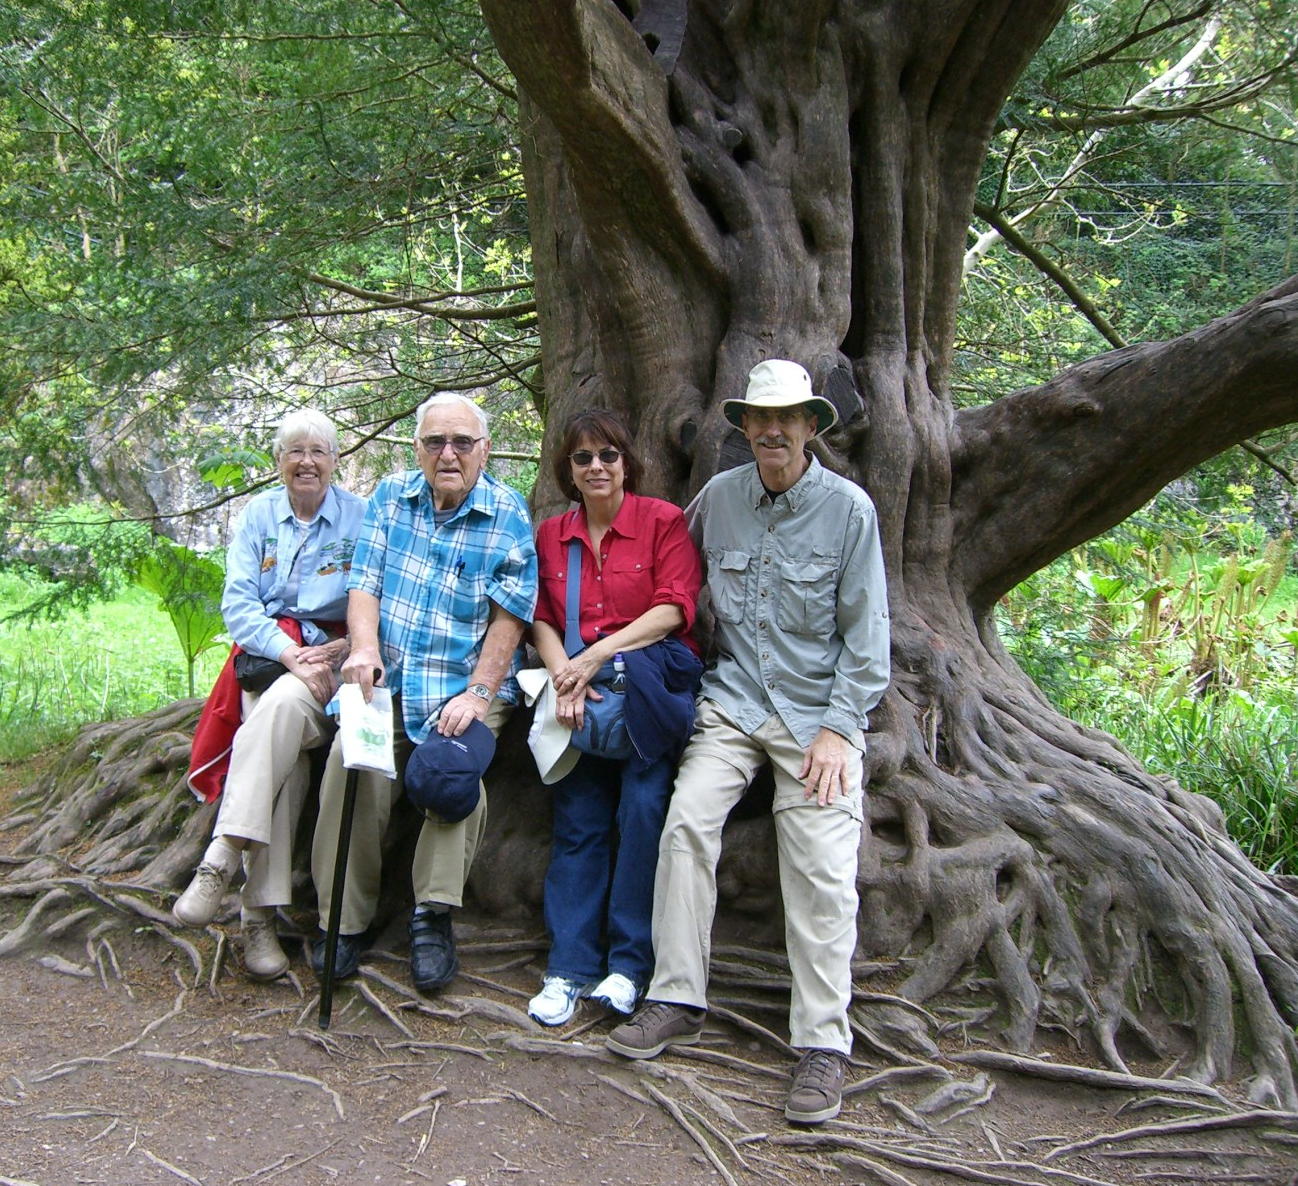 Gen, Ellie, Anita, Mike sit on tree roots